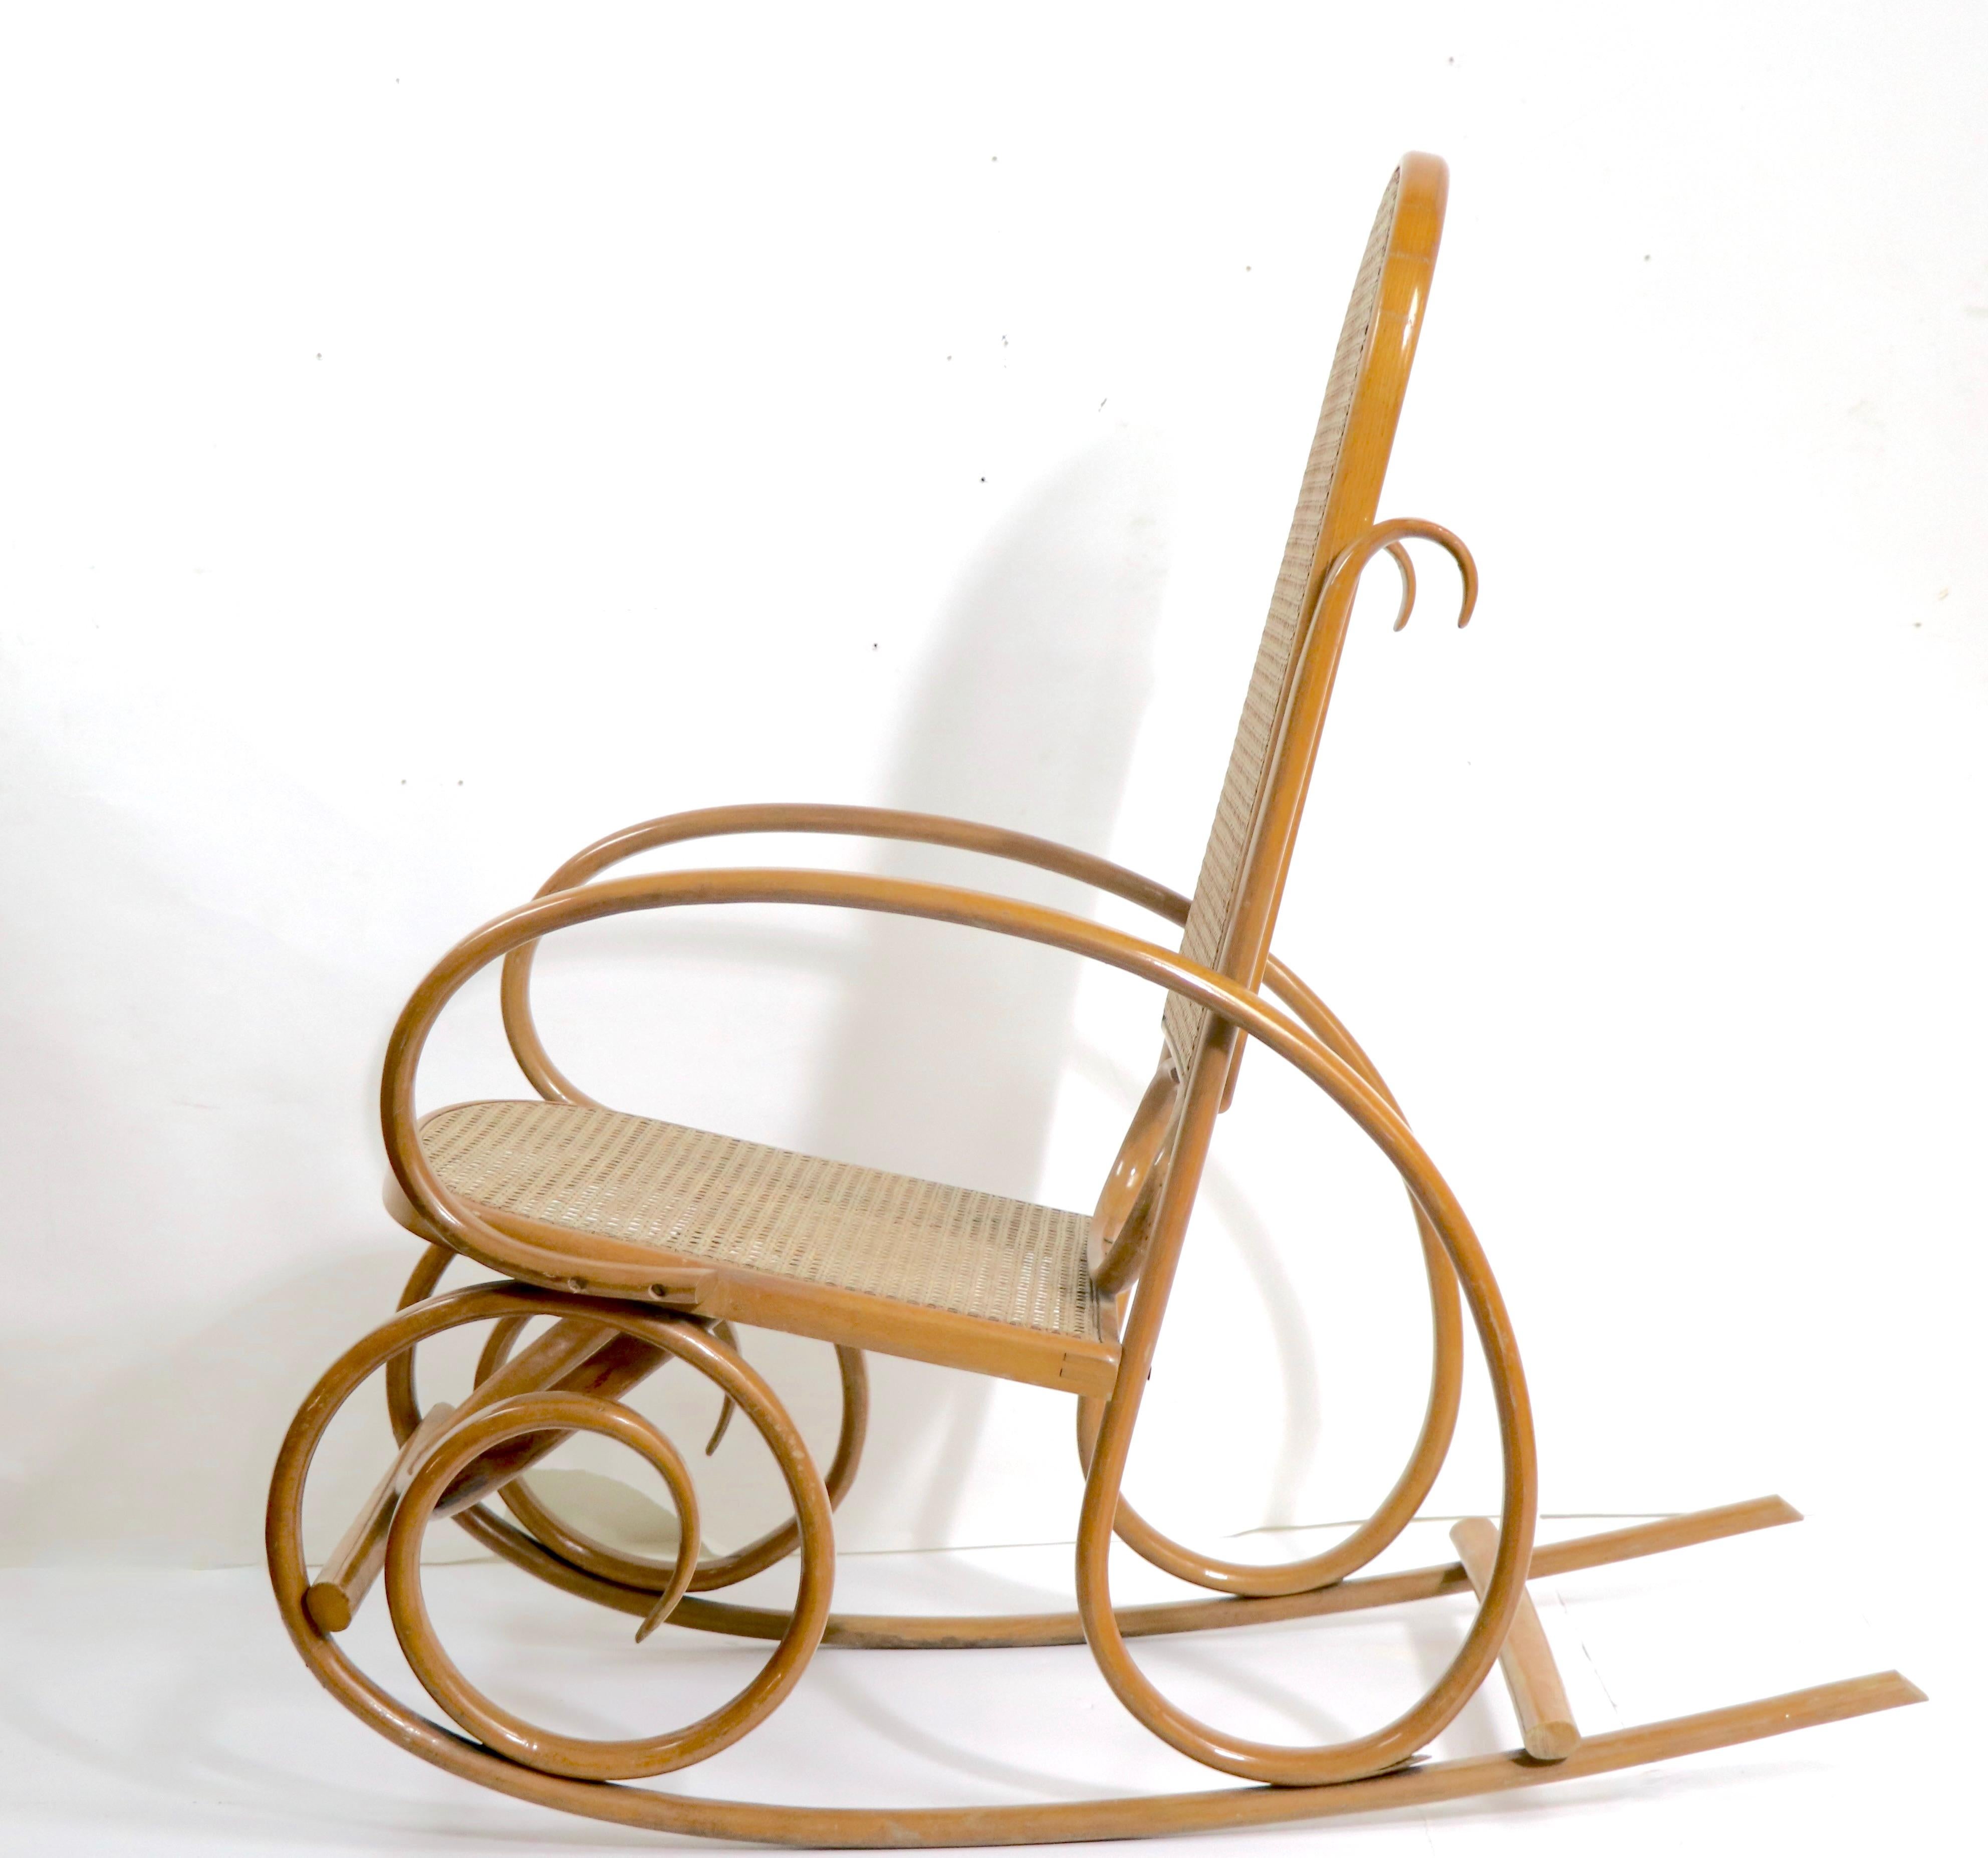 Chaise à bascule inhabituelle en bois courbé et en rotin, de style sécessionniste viennois, probablement datant du milieu du XXe siècle, Thonet - fabriqué aux États-Unis, non signé. La chaise est légèrement plus petite à l'échelle, une variation de